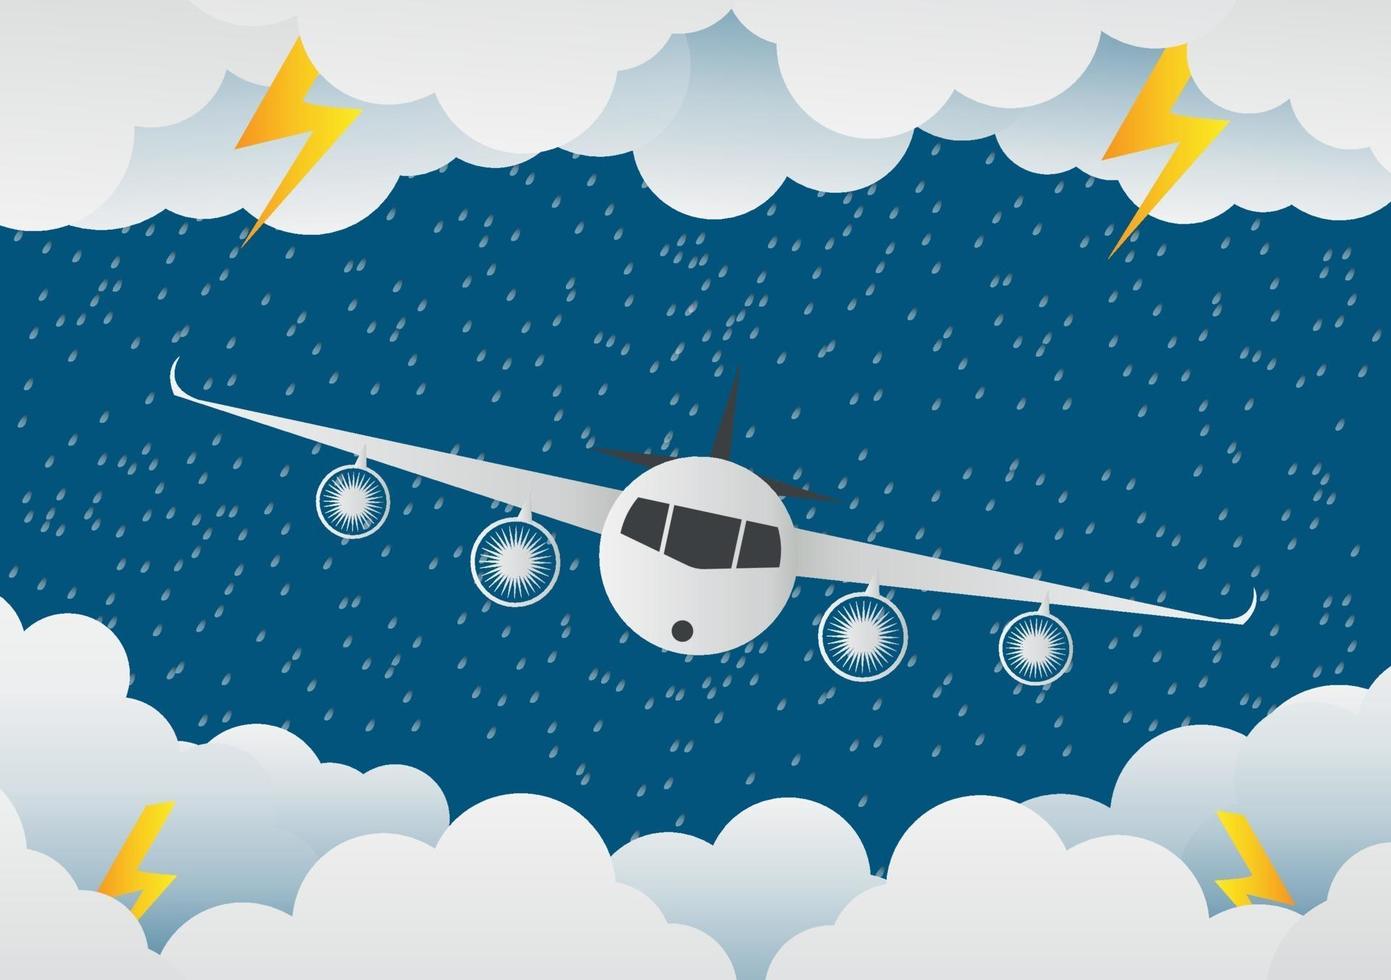 Das Flugzeug fliegt durch Wolken. Regentag und Blitz in den Wolken, Vektorillustration. auf abstraktem Hintergrund.Papier Art.Vektor Illustration vektor